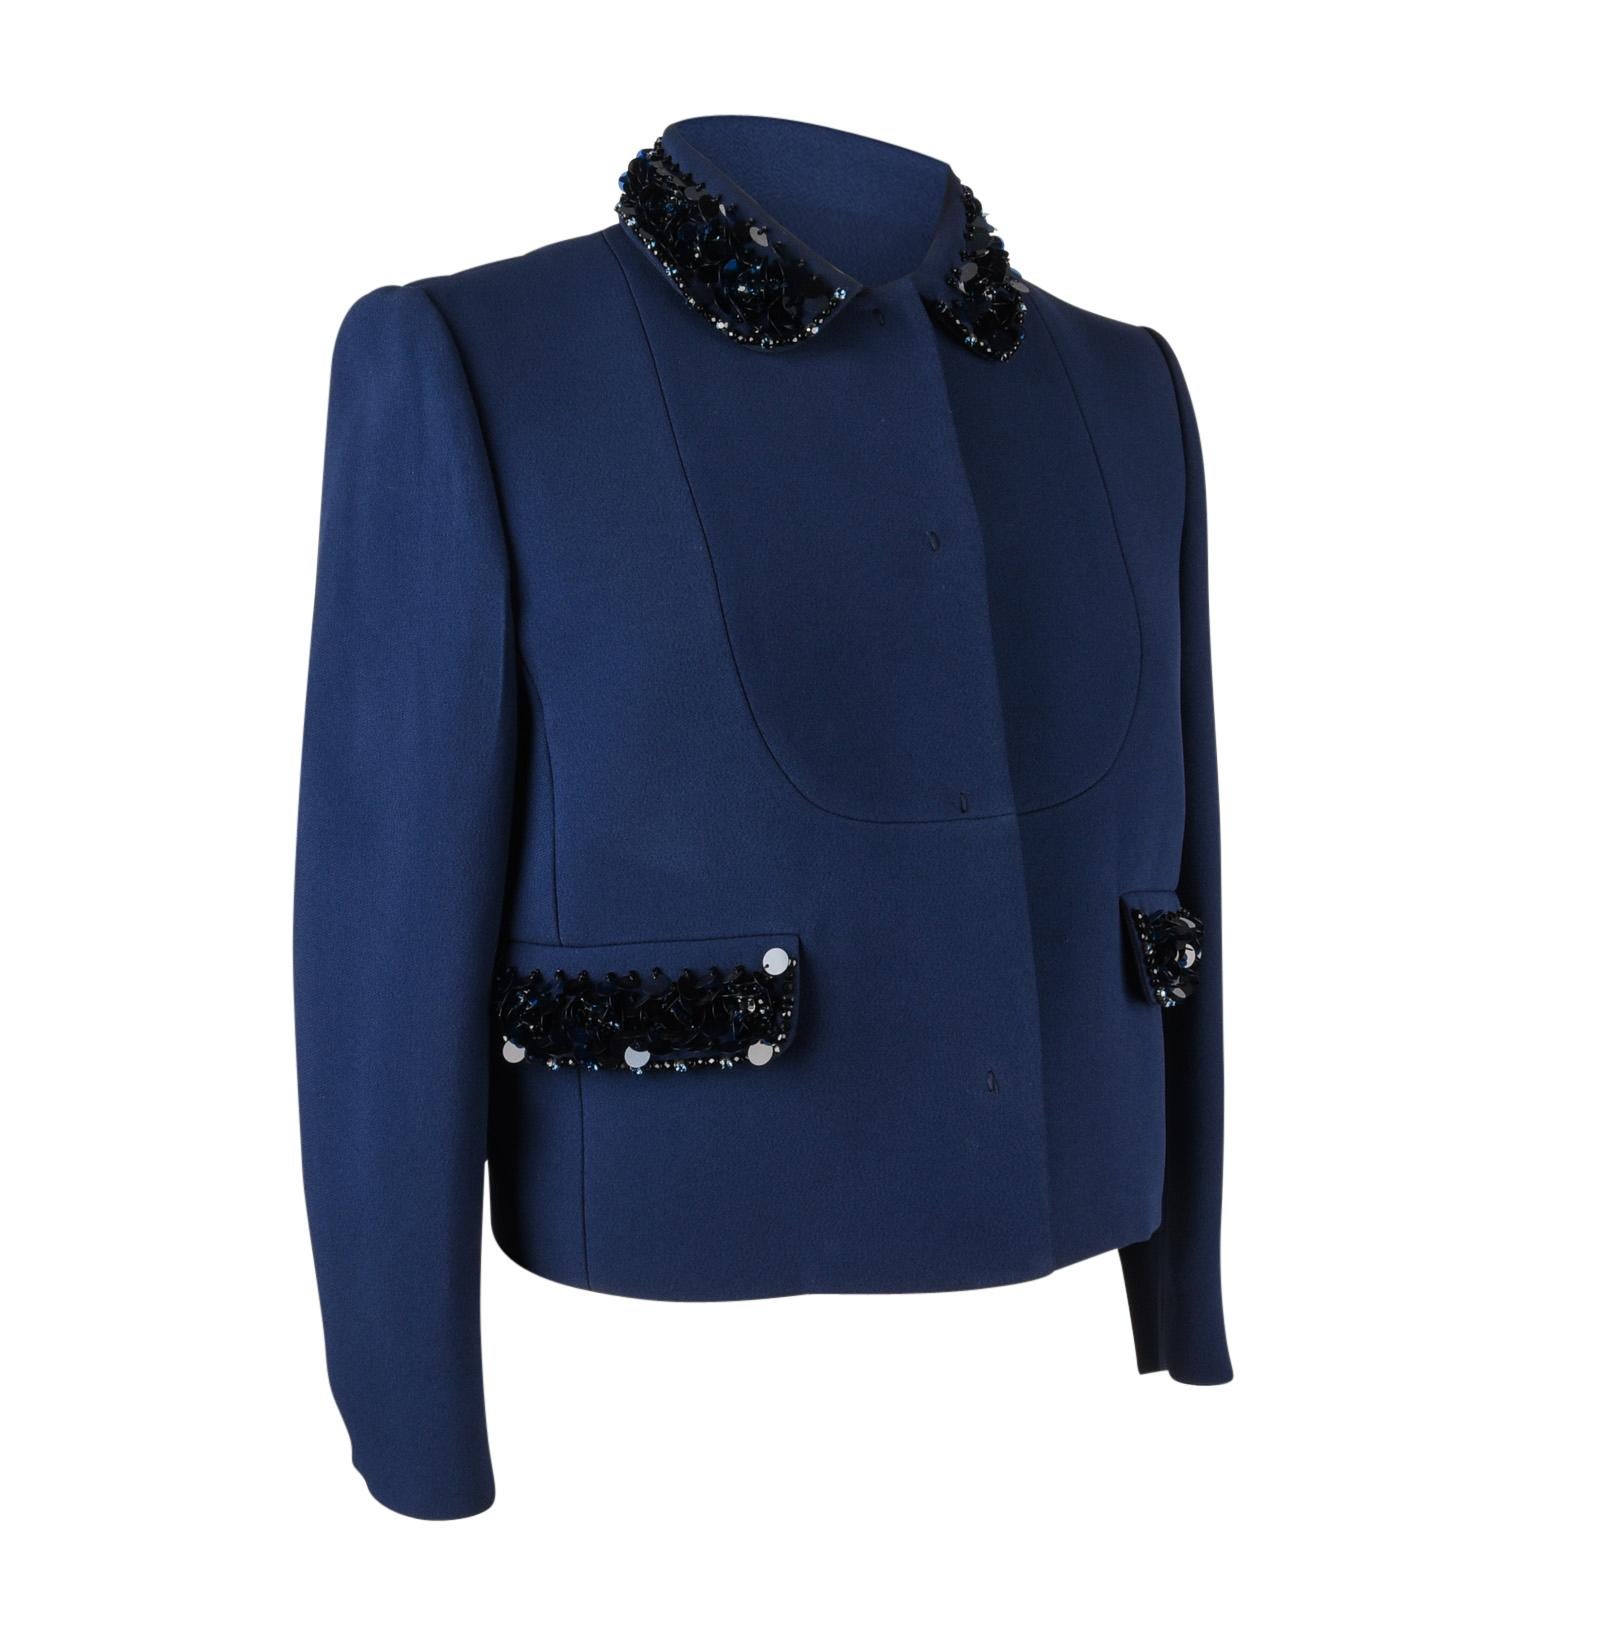 Miu Miu Jacket Navy Embellished Collar / Pockets 3/4 Sleeve 42 1